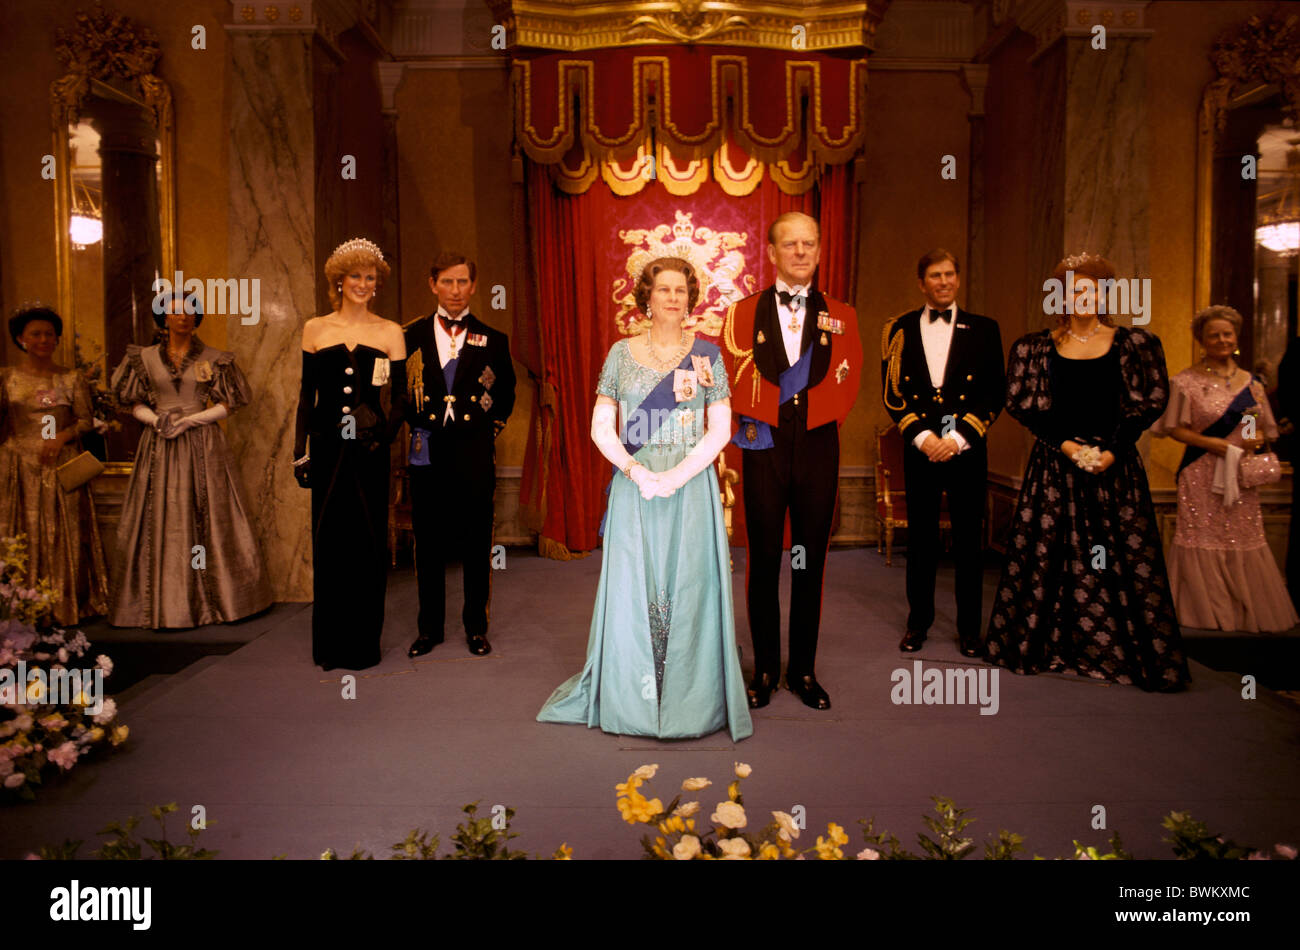 La Reine Elizabeth II du Royaume-Uni Londres Madame Tussauds Famille royale Grande-bretagne Europe Angleterre sculptures du musée de cire Banque D'Images